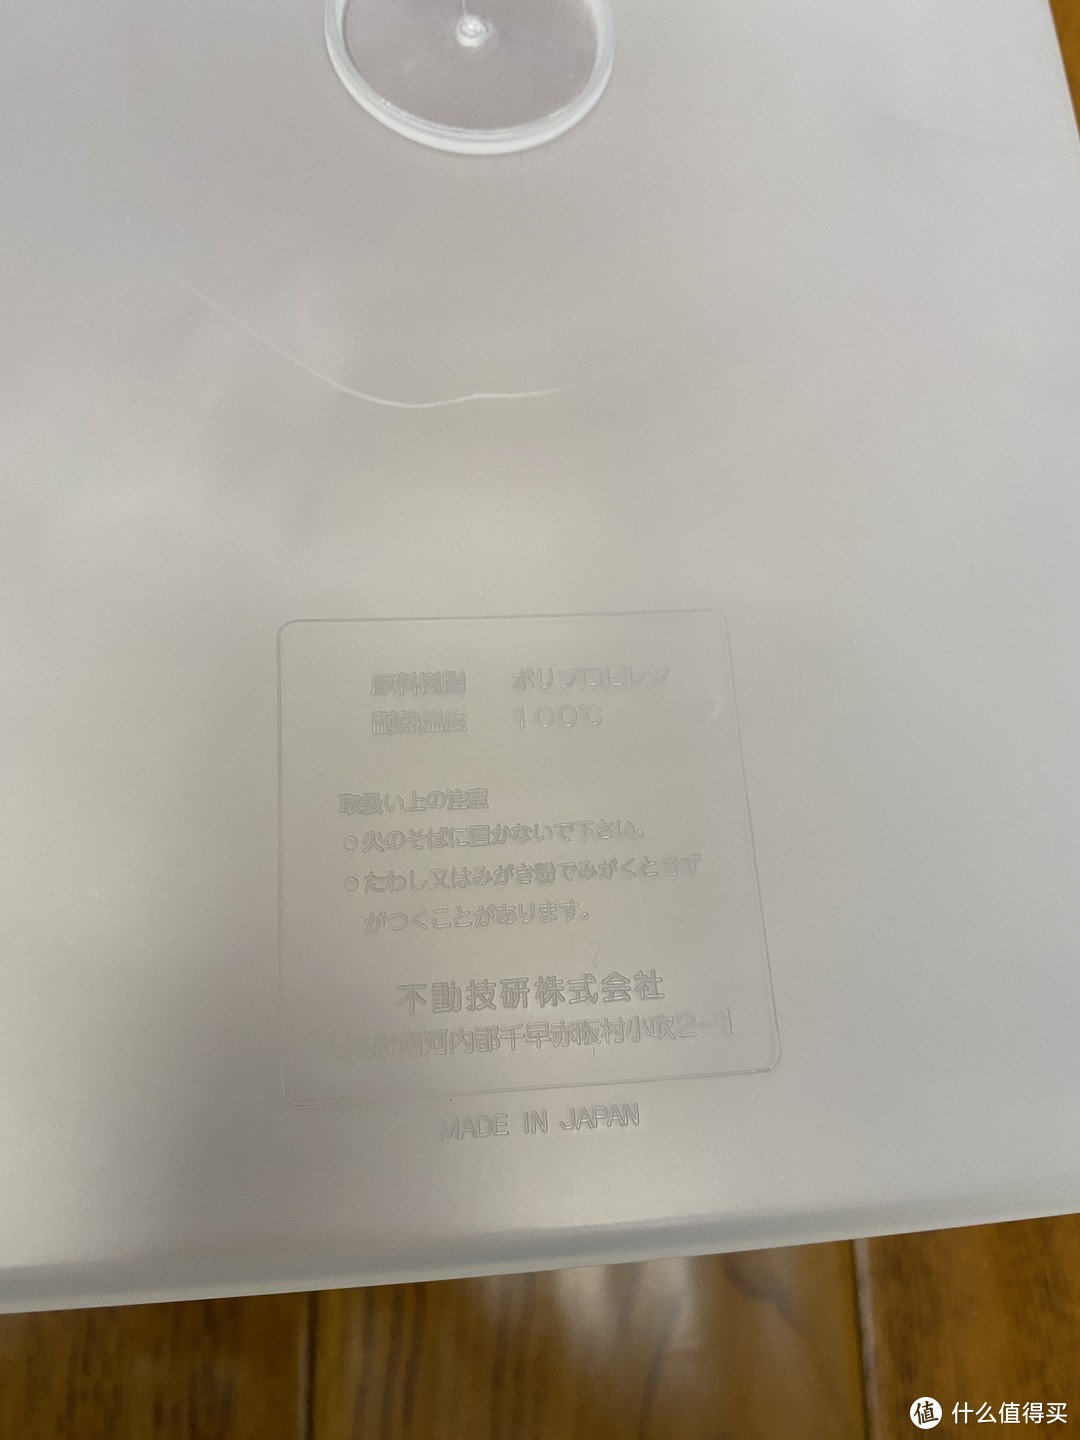 日文铭牌细节图，文字清晰，耐热100度，MADE IN JAPAN